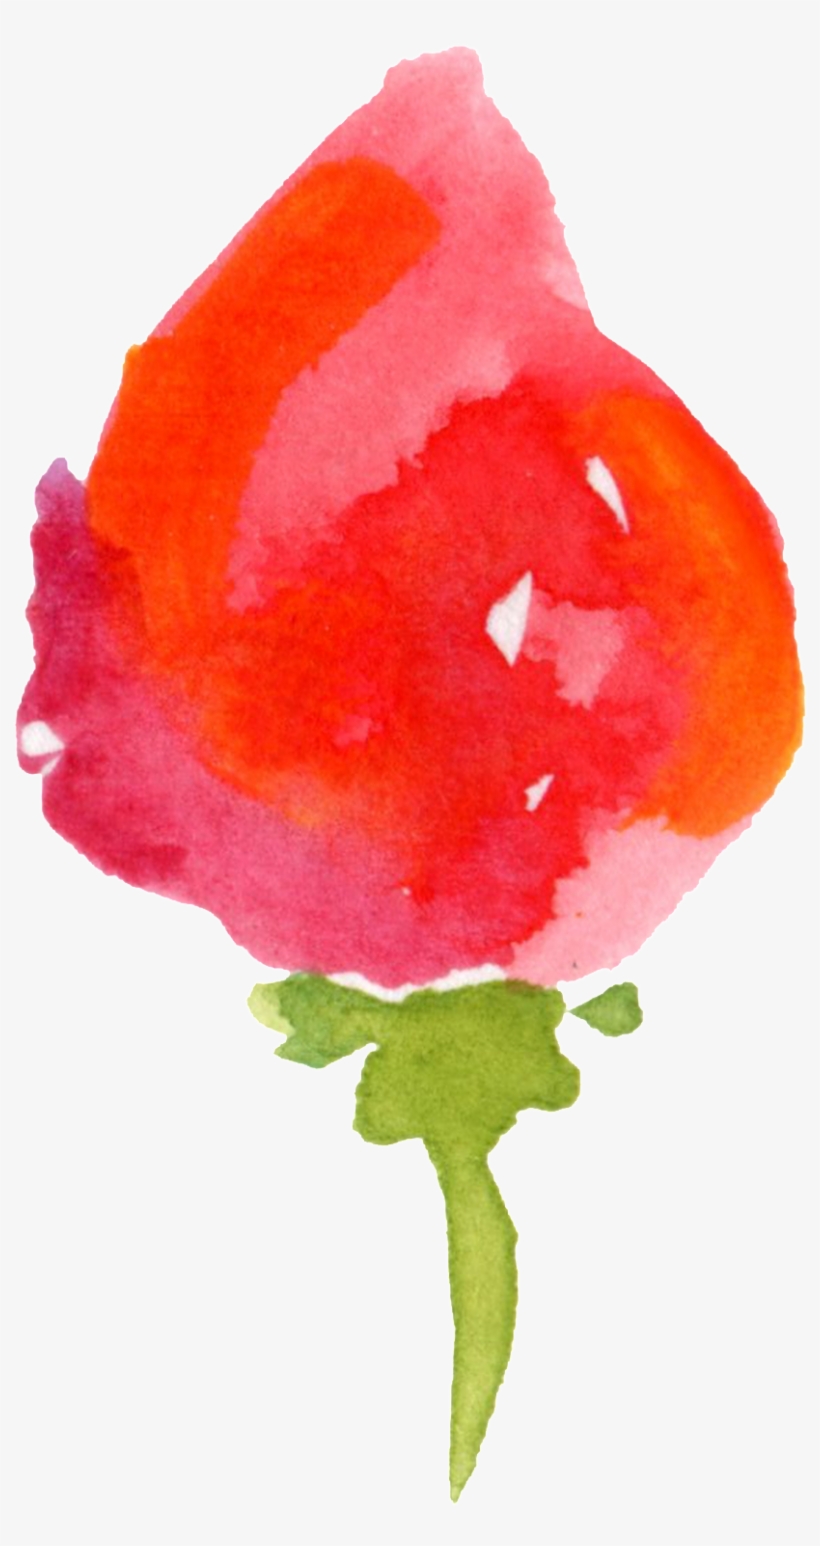 Red Flower Transparent Decorative - Watercolor Paint, transparent png #8350877